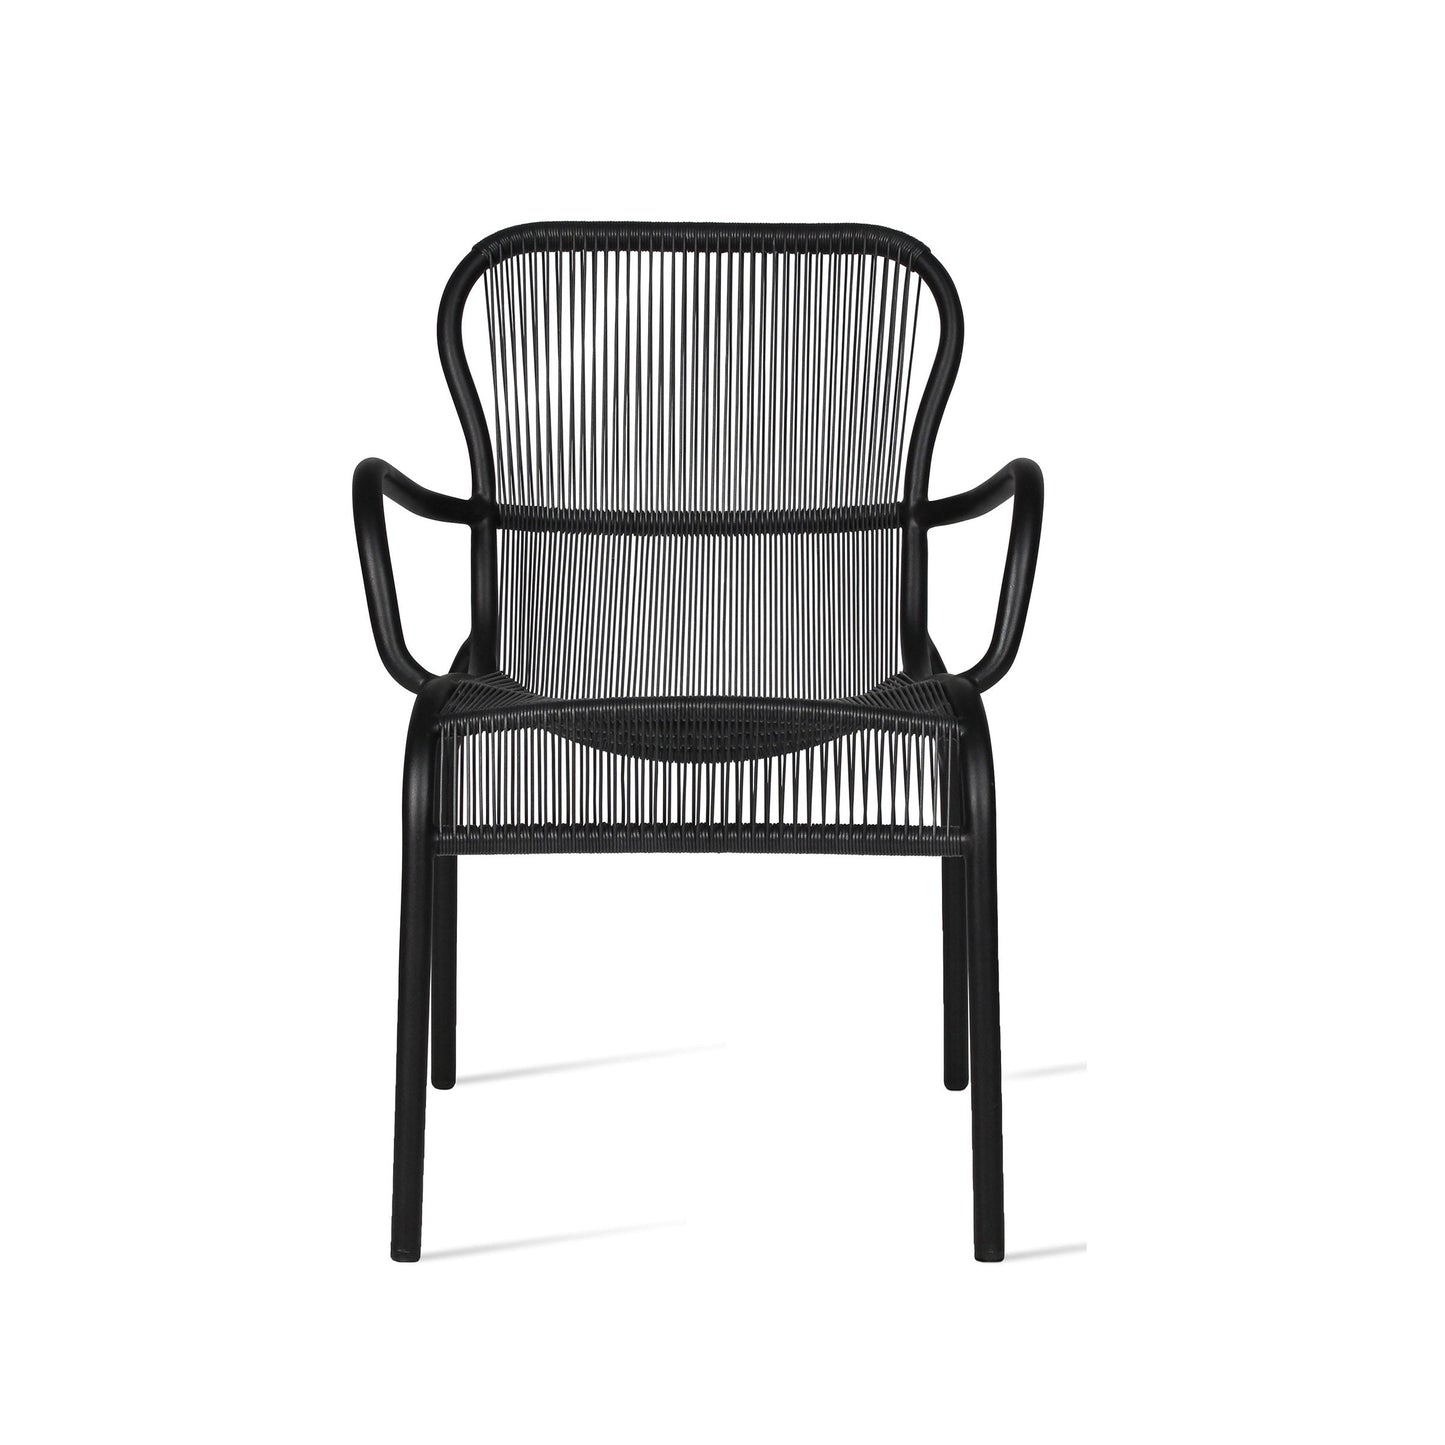 Loop Dining Chair Black 349,50 EURO per stuk